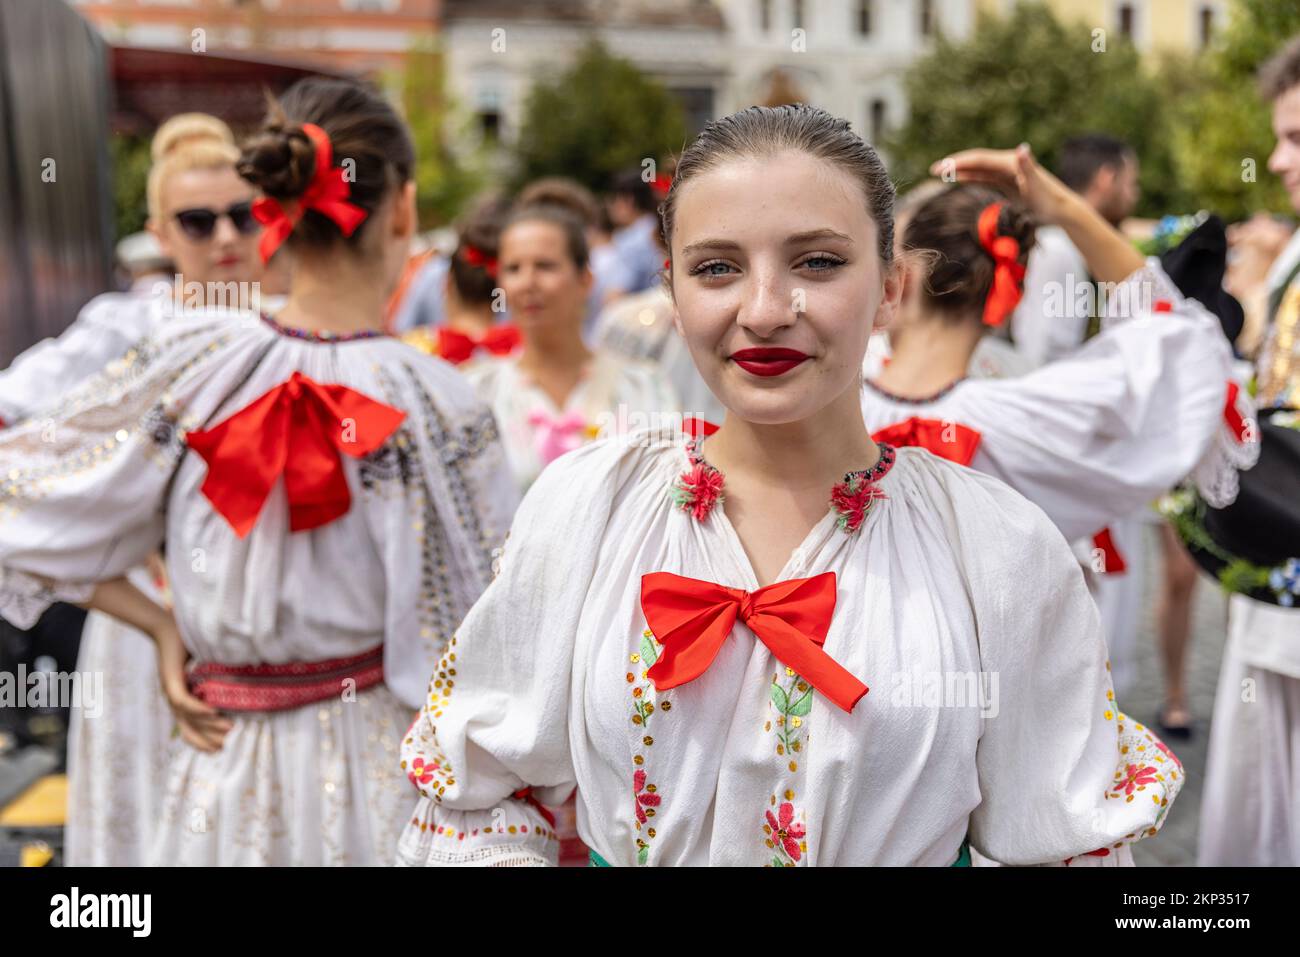 Ballerini popolari rumeni e ungheresi di fronte alla Chiesa di San Michele in Piazza Unirii, Cluj-Napoca, Romania Foto Stock